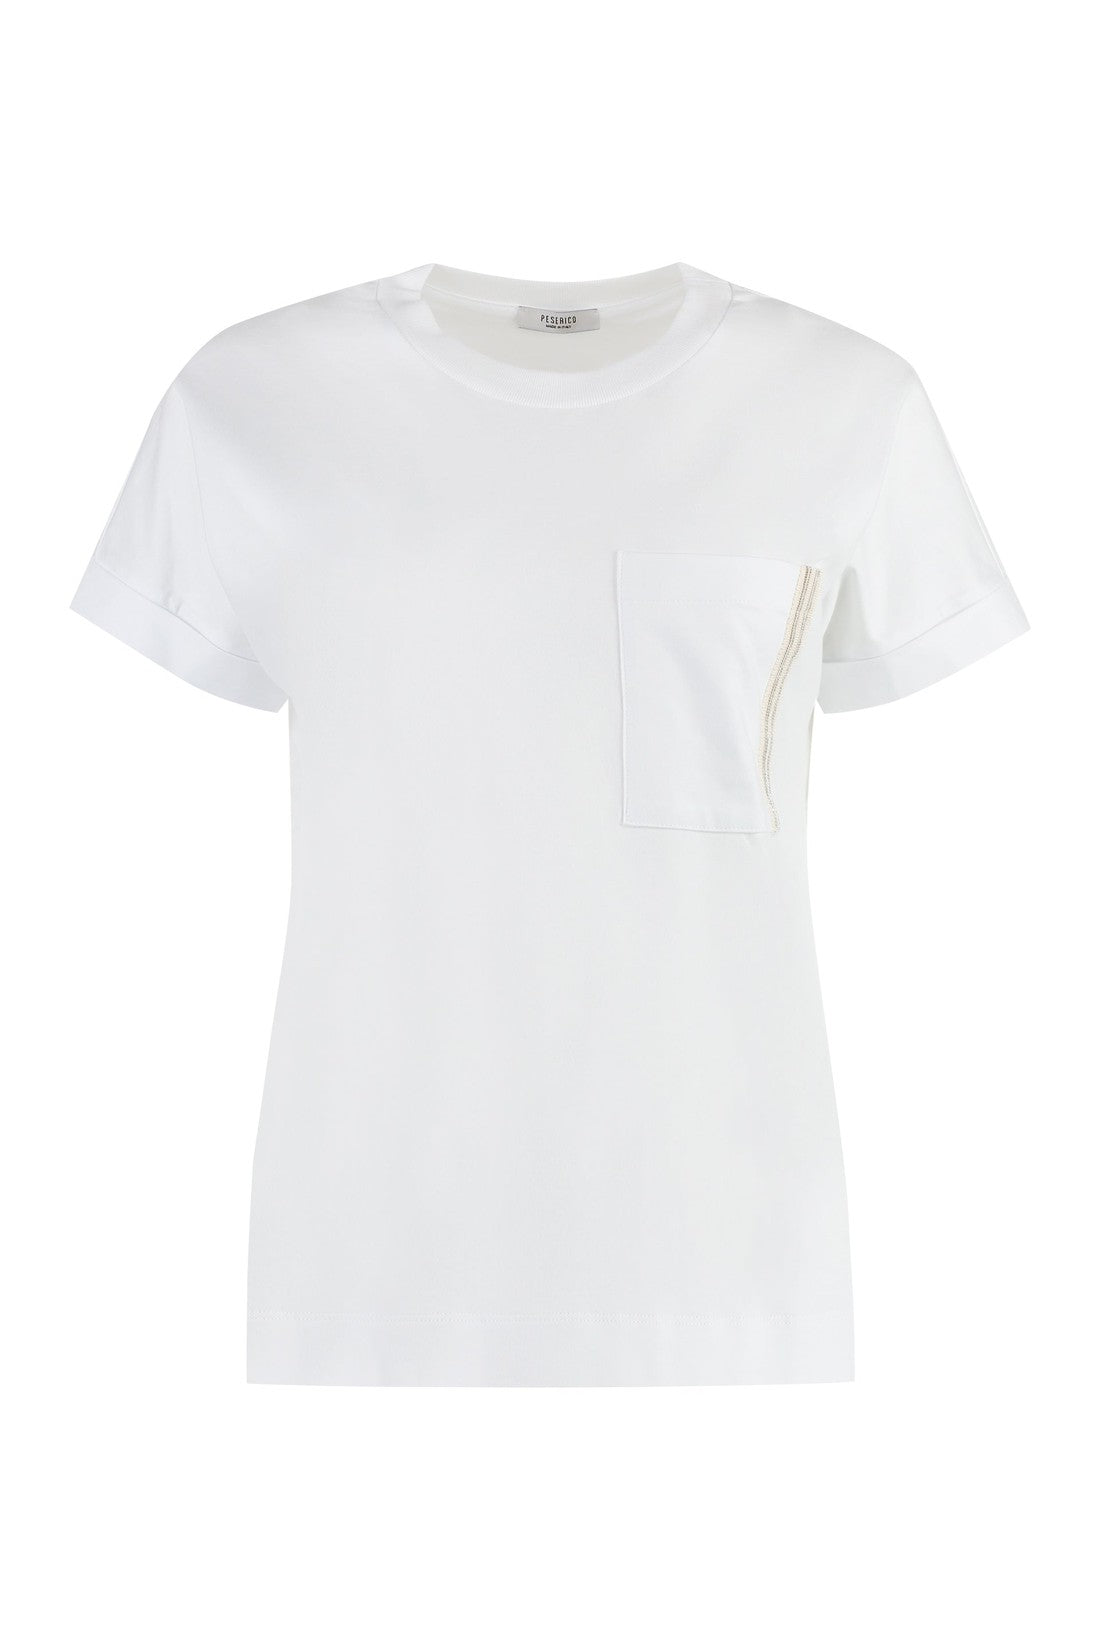 Peserico-OUTLET-SALE-Cotton crew-neck T-shirt-ARCHIVIST